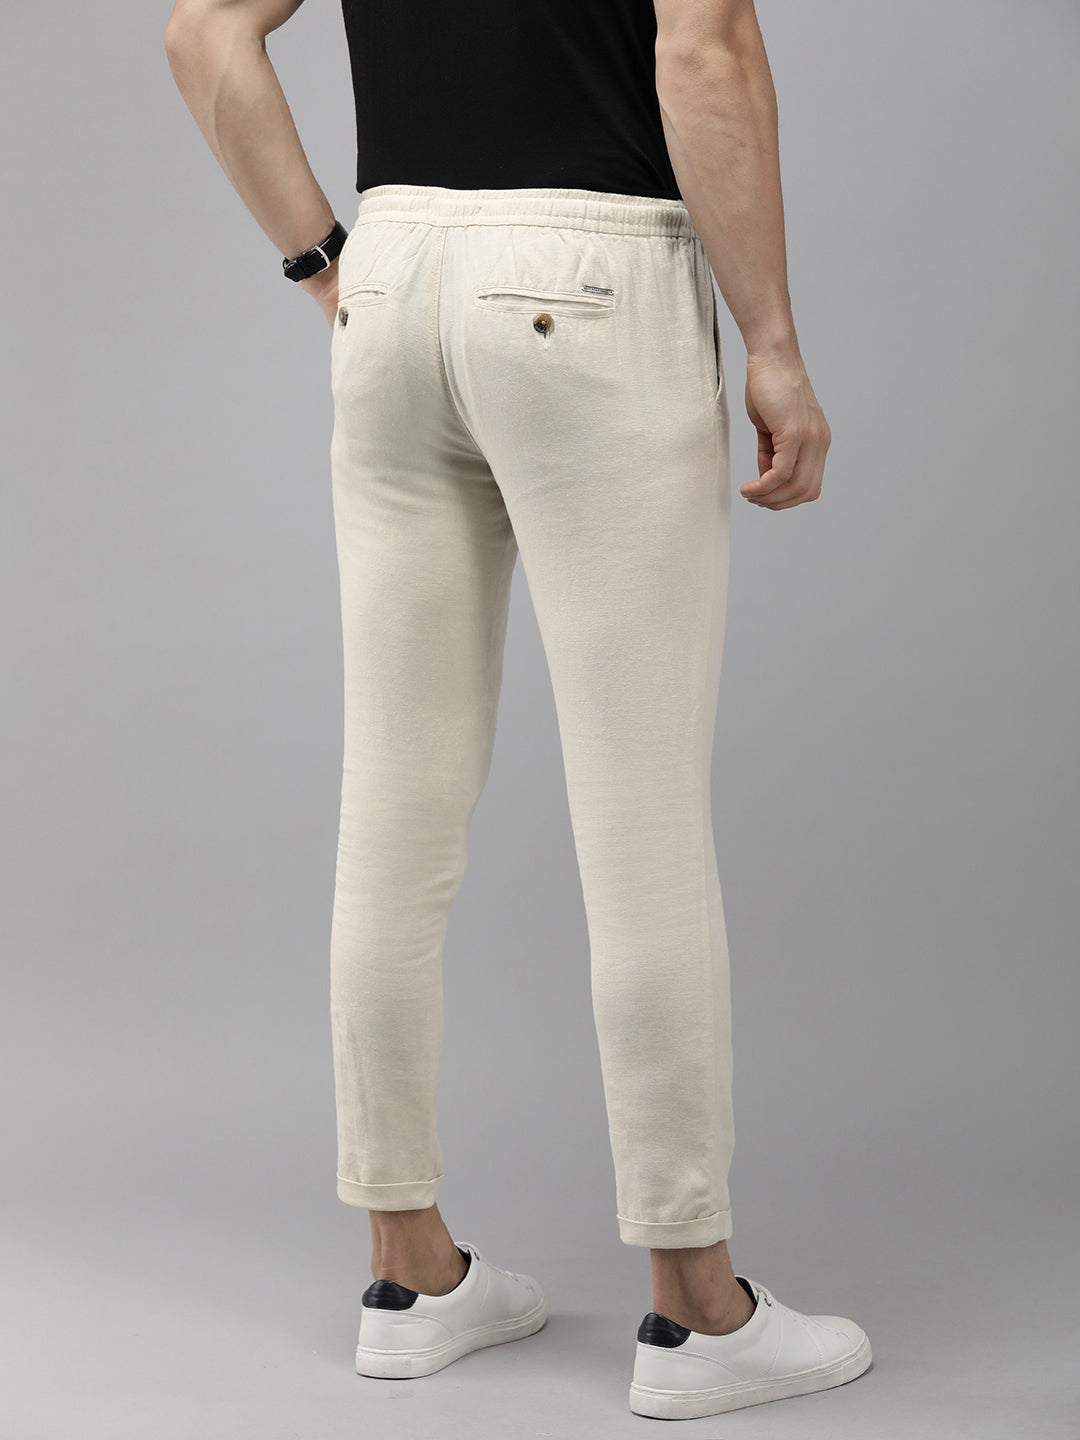 VAN HEUSEN Tapered Men Cream Trousers  Buy VAN HEUSEN Tapered Men Cream  Trousers Online at Best Prices in India  Flipkartcom